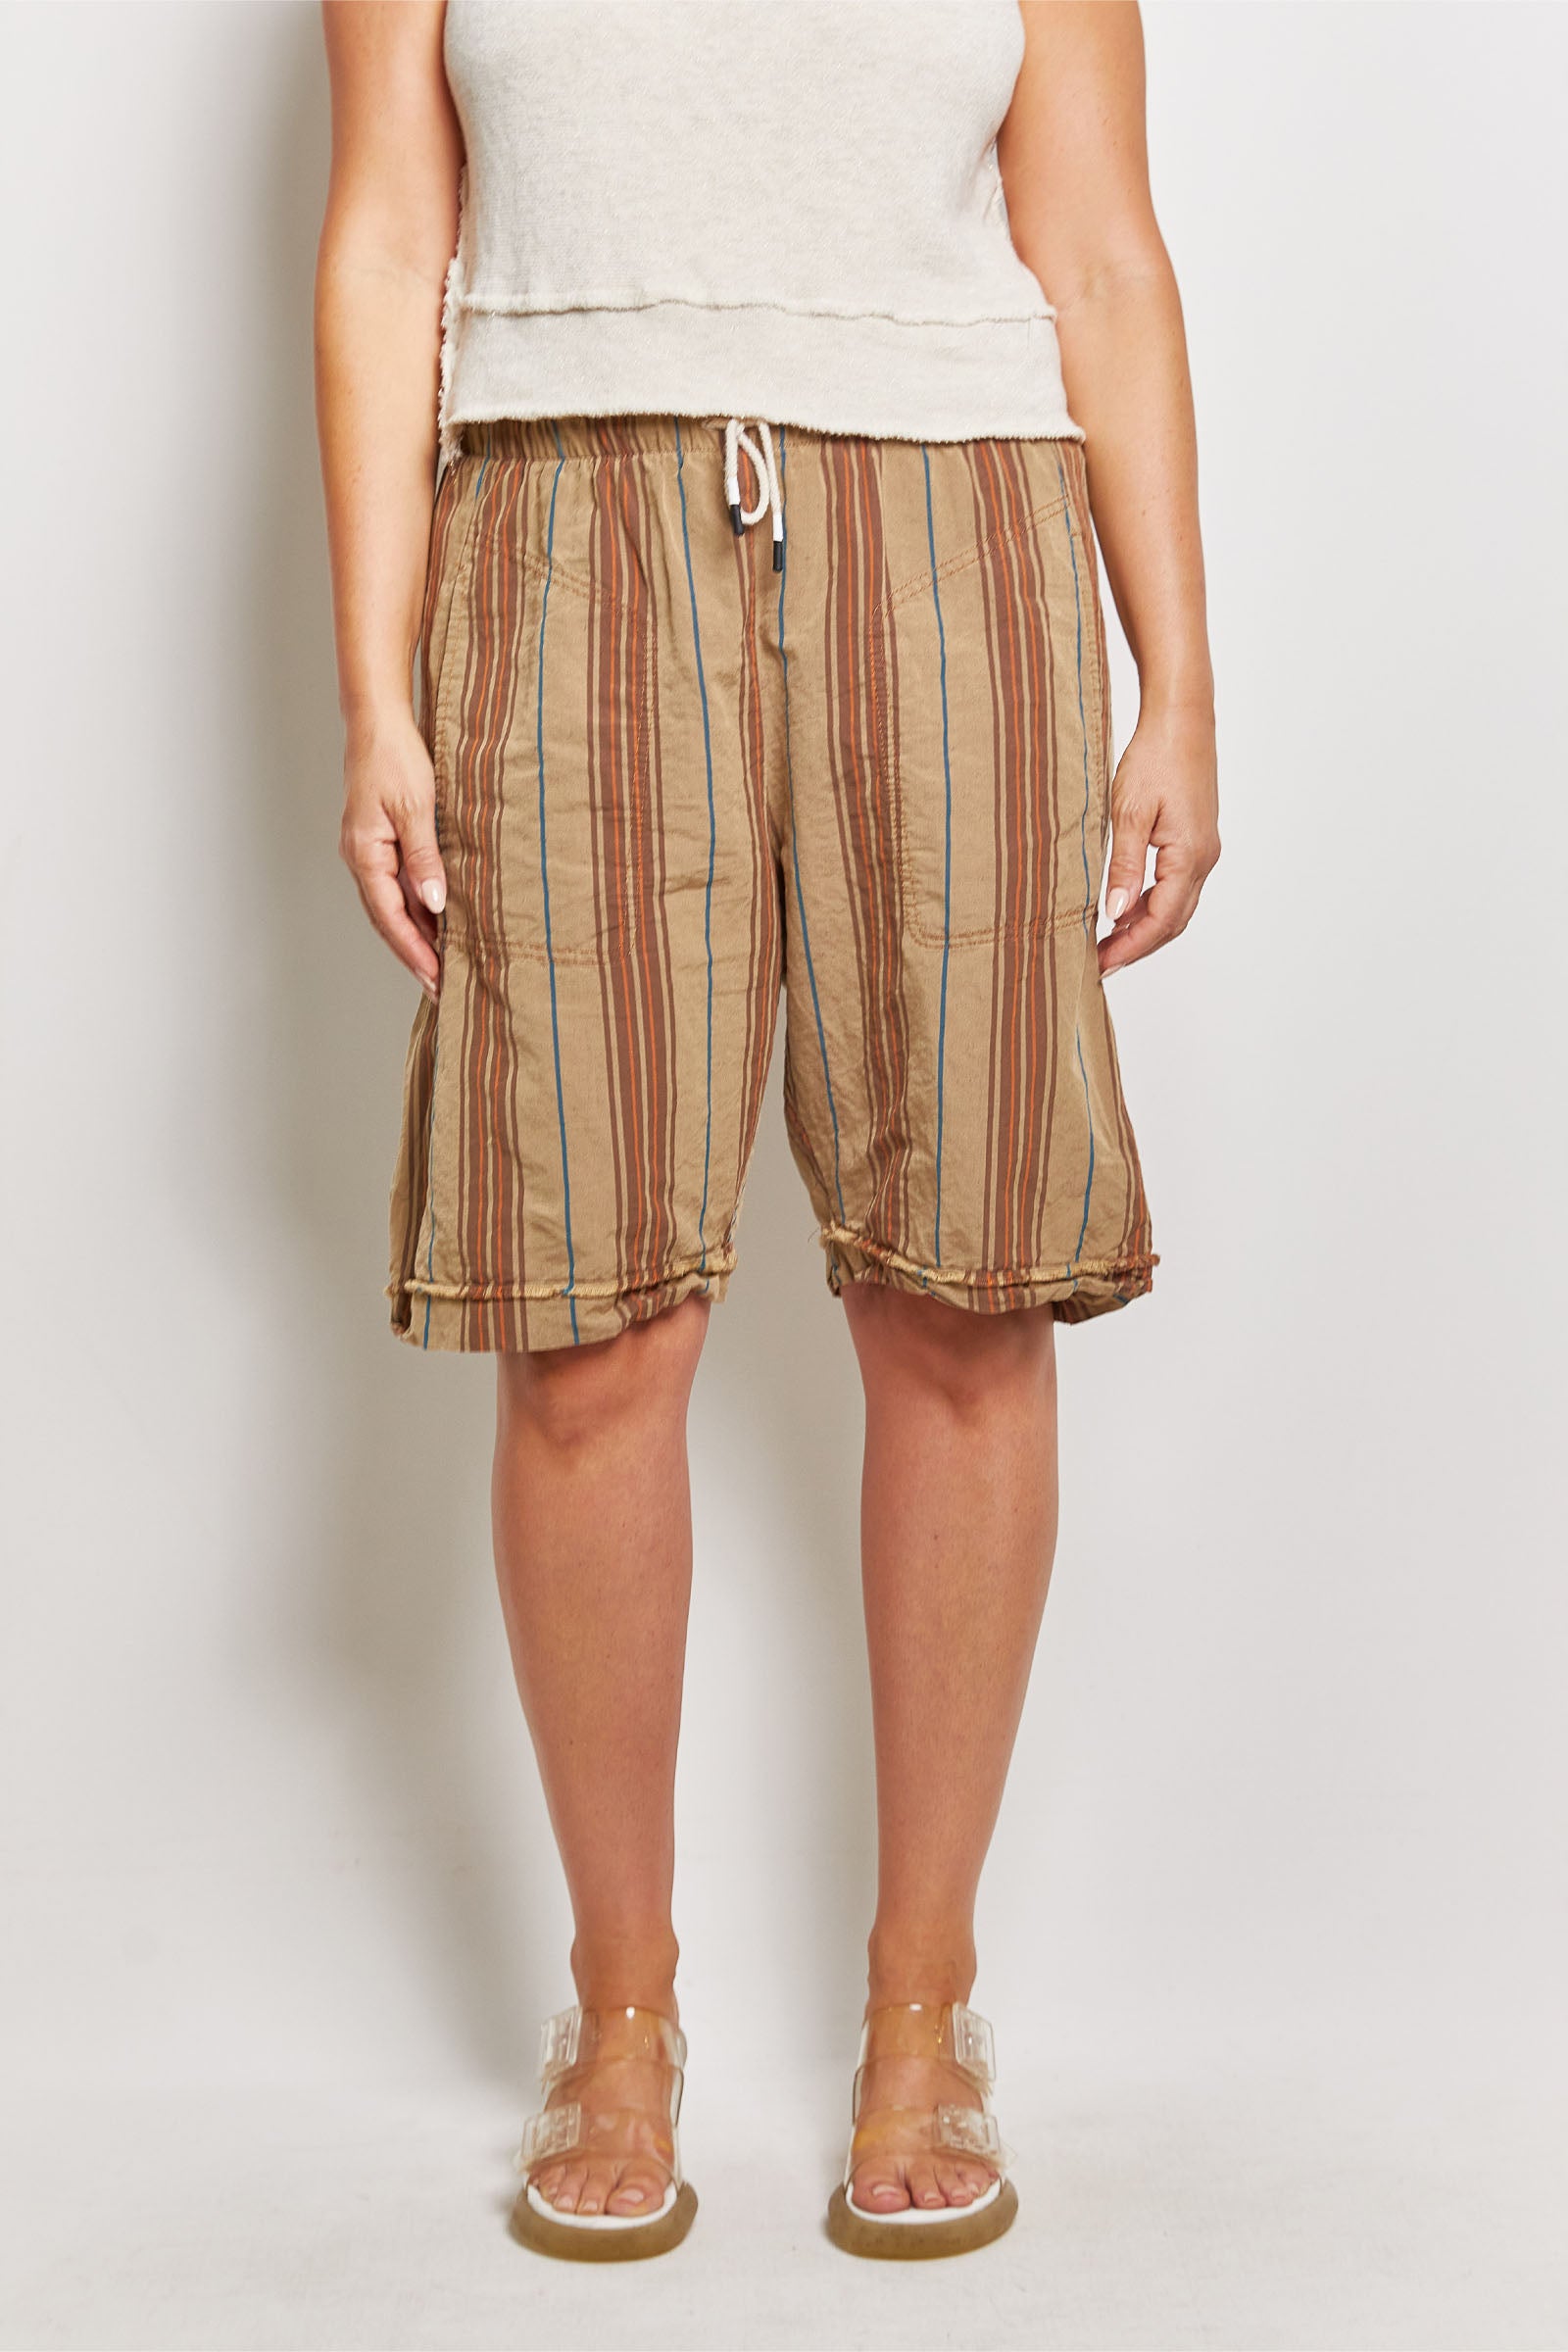 byfreer kooler khaki stripe linen shorts.